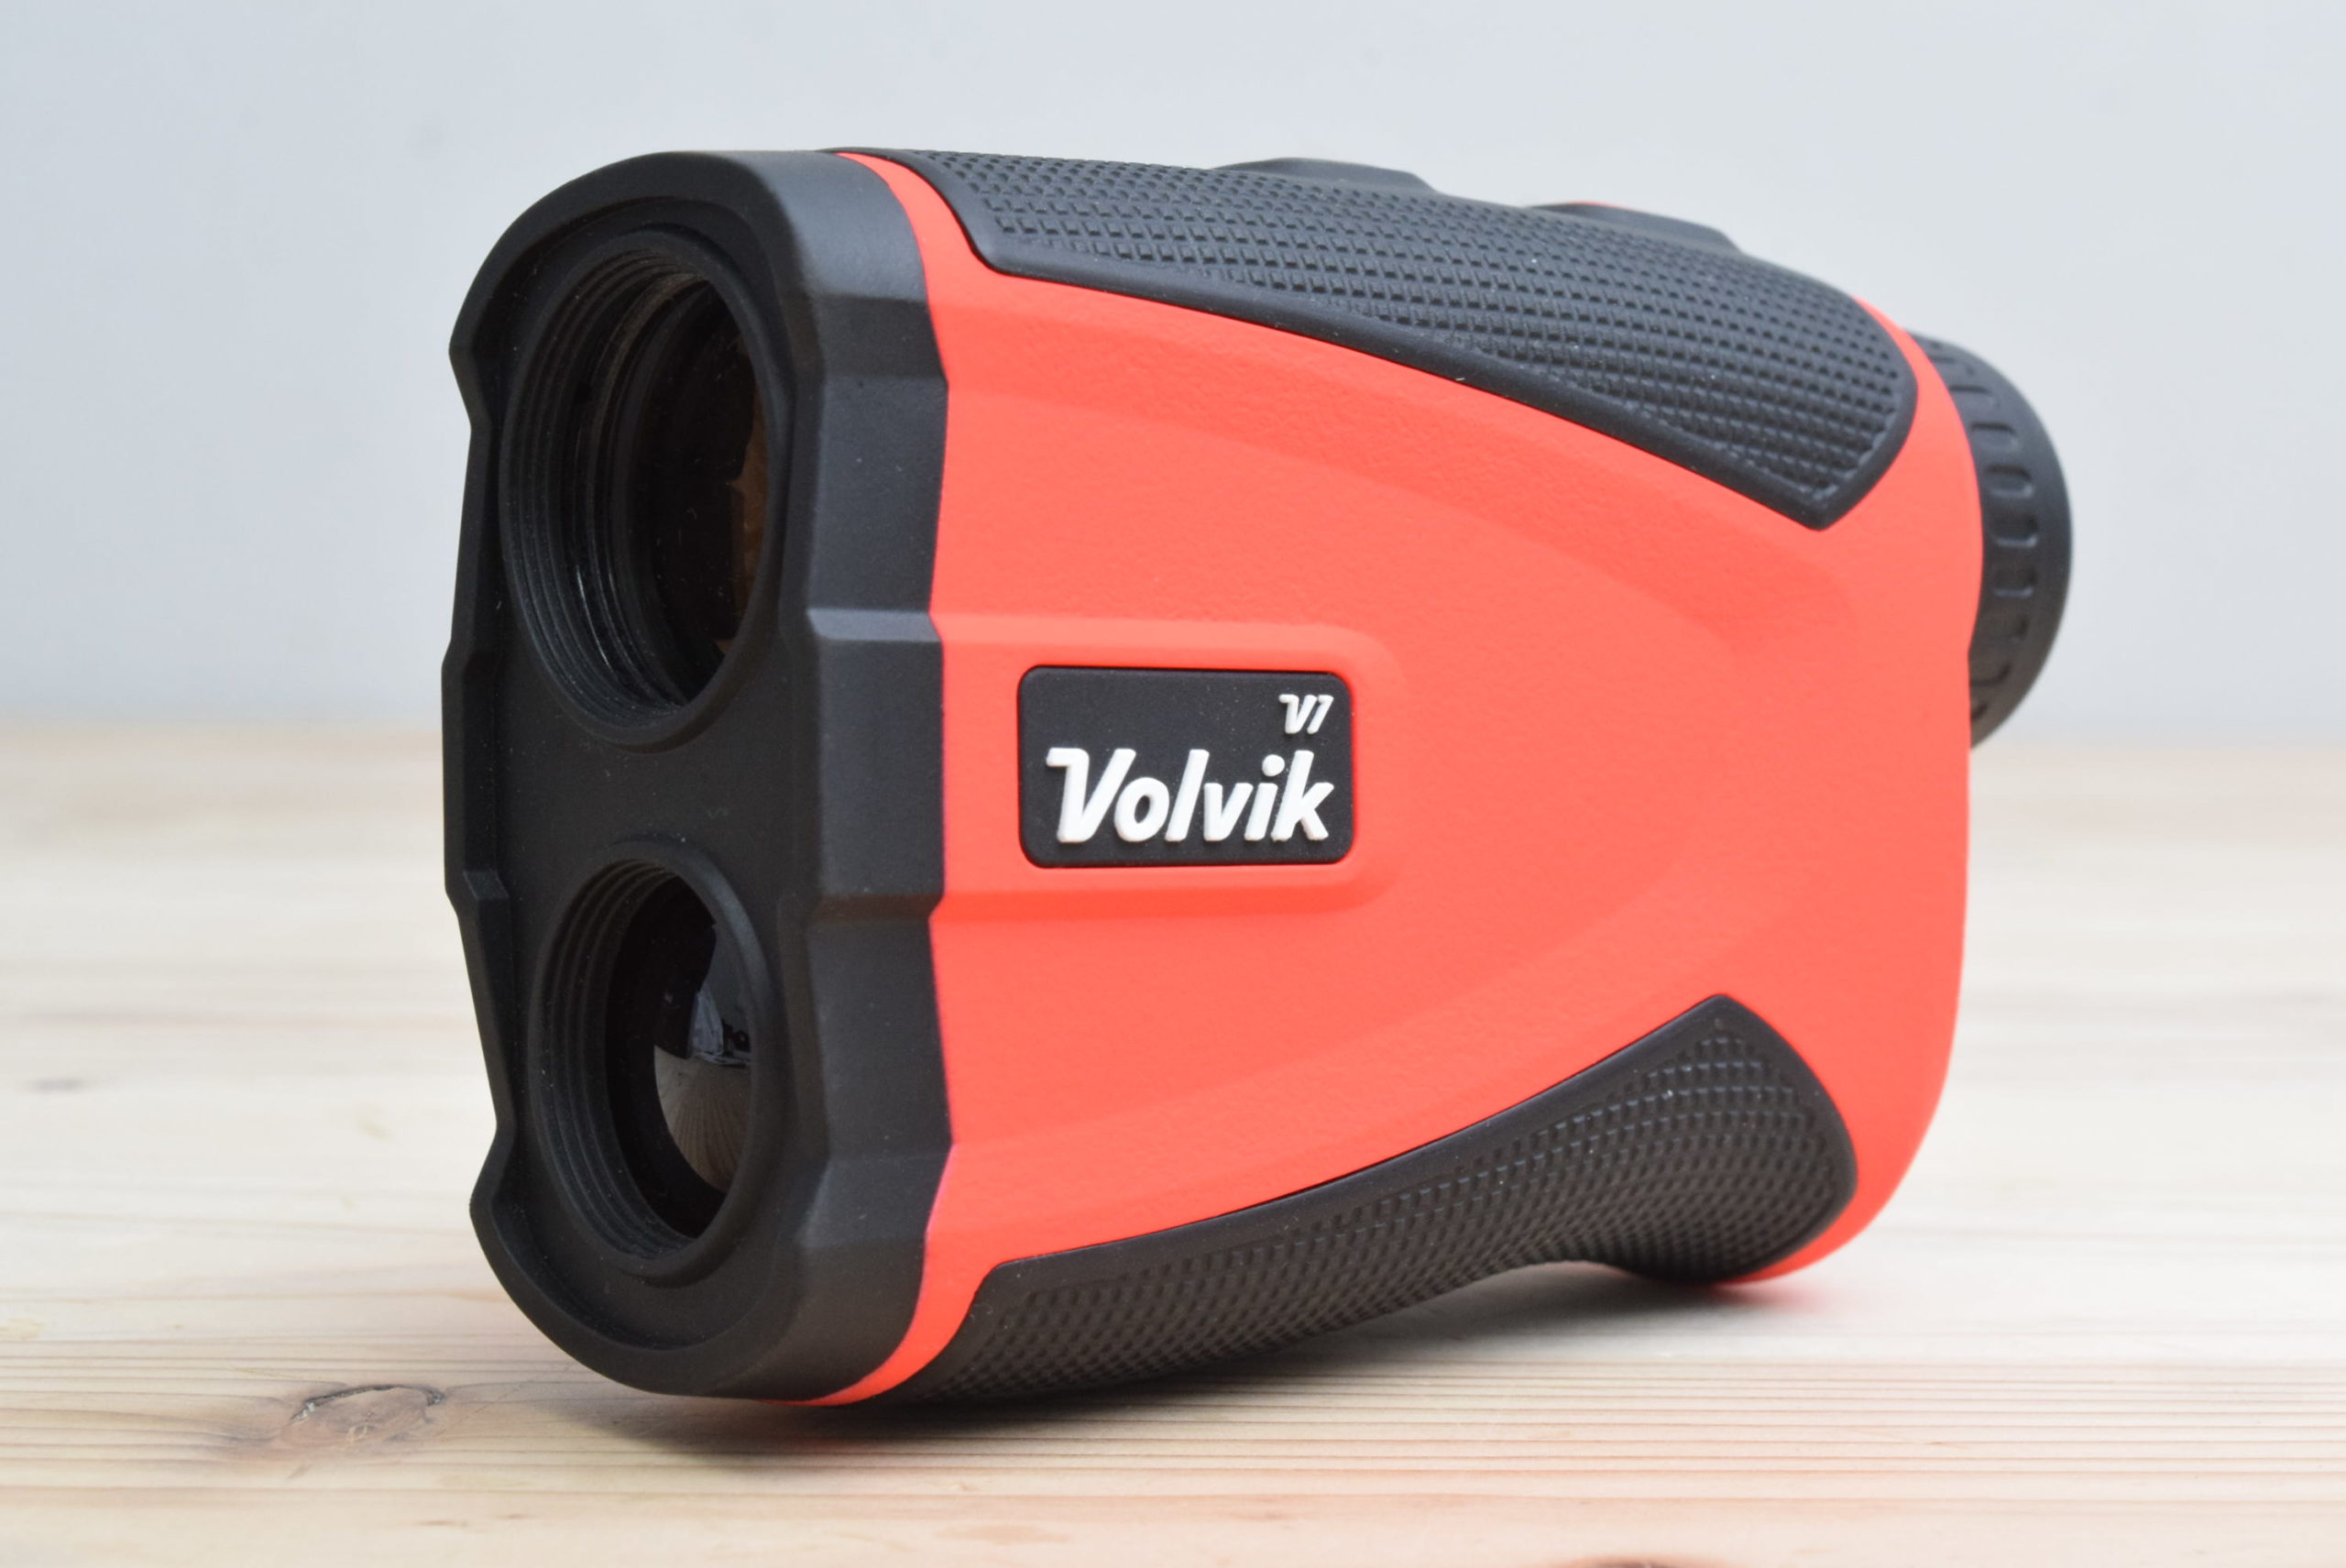 ヴォルビック VOLVIK Range Finder V1 レッド レーザー距離計の買取価格 │ ゴルフクラブ買取ナンバーワン